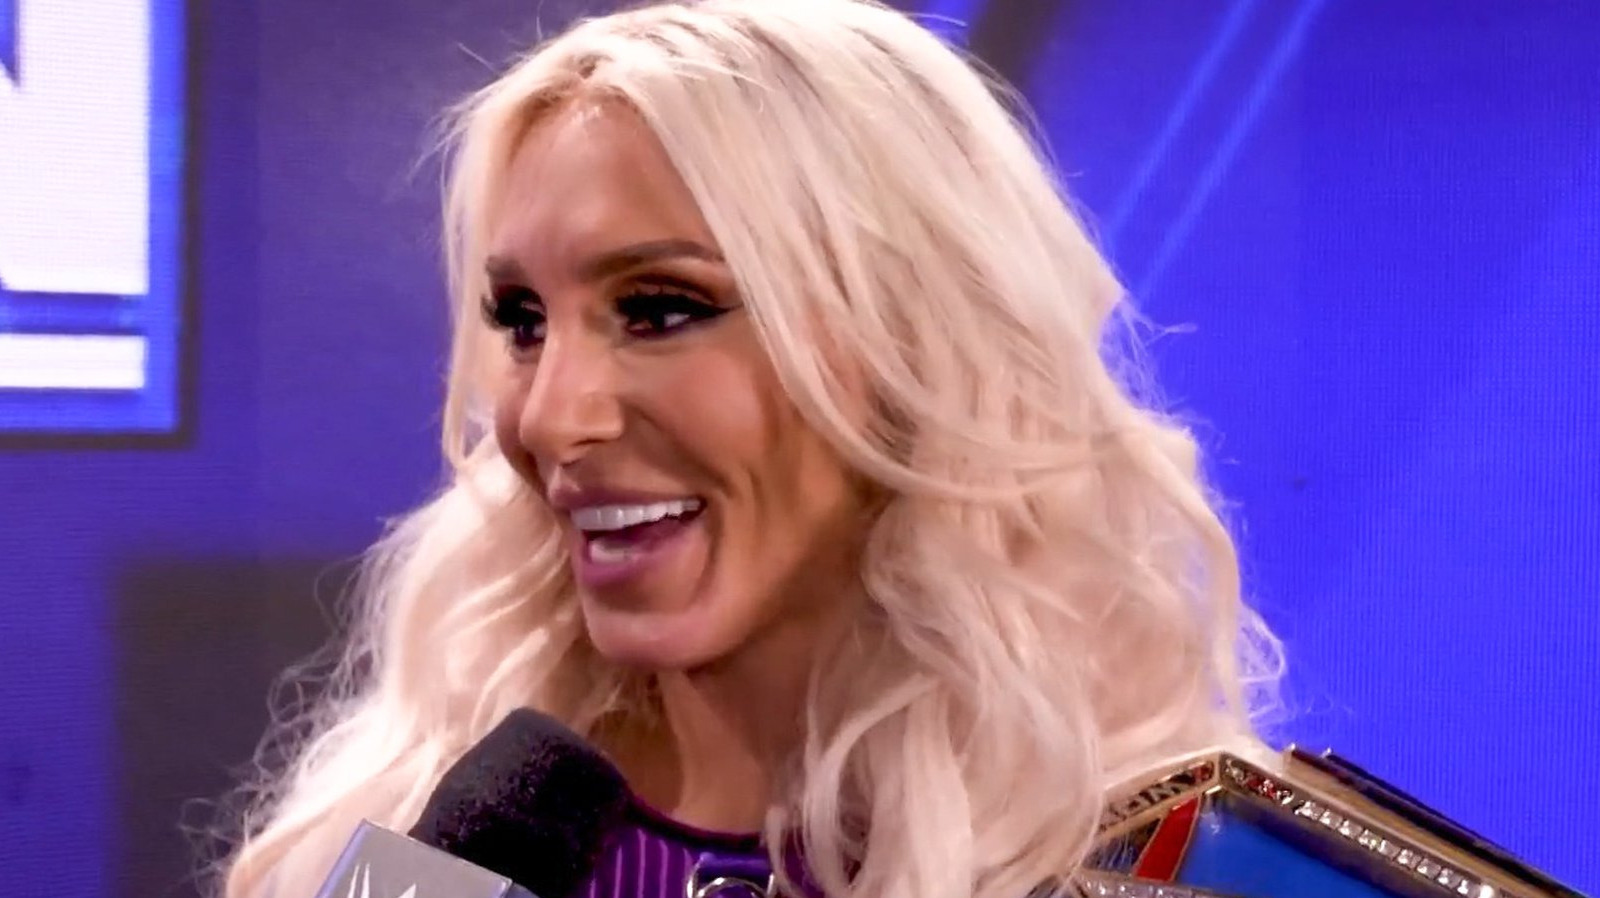 Detalles tras bambalinas sobre Charlotte Flair y Ronda Rousey tras el cambio de título de WWE SmackDown